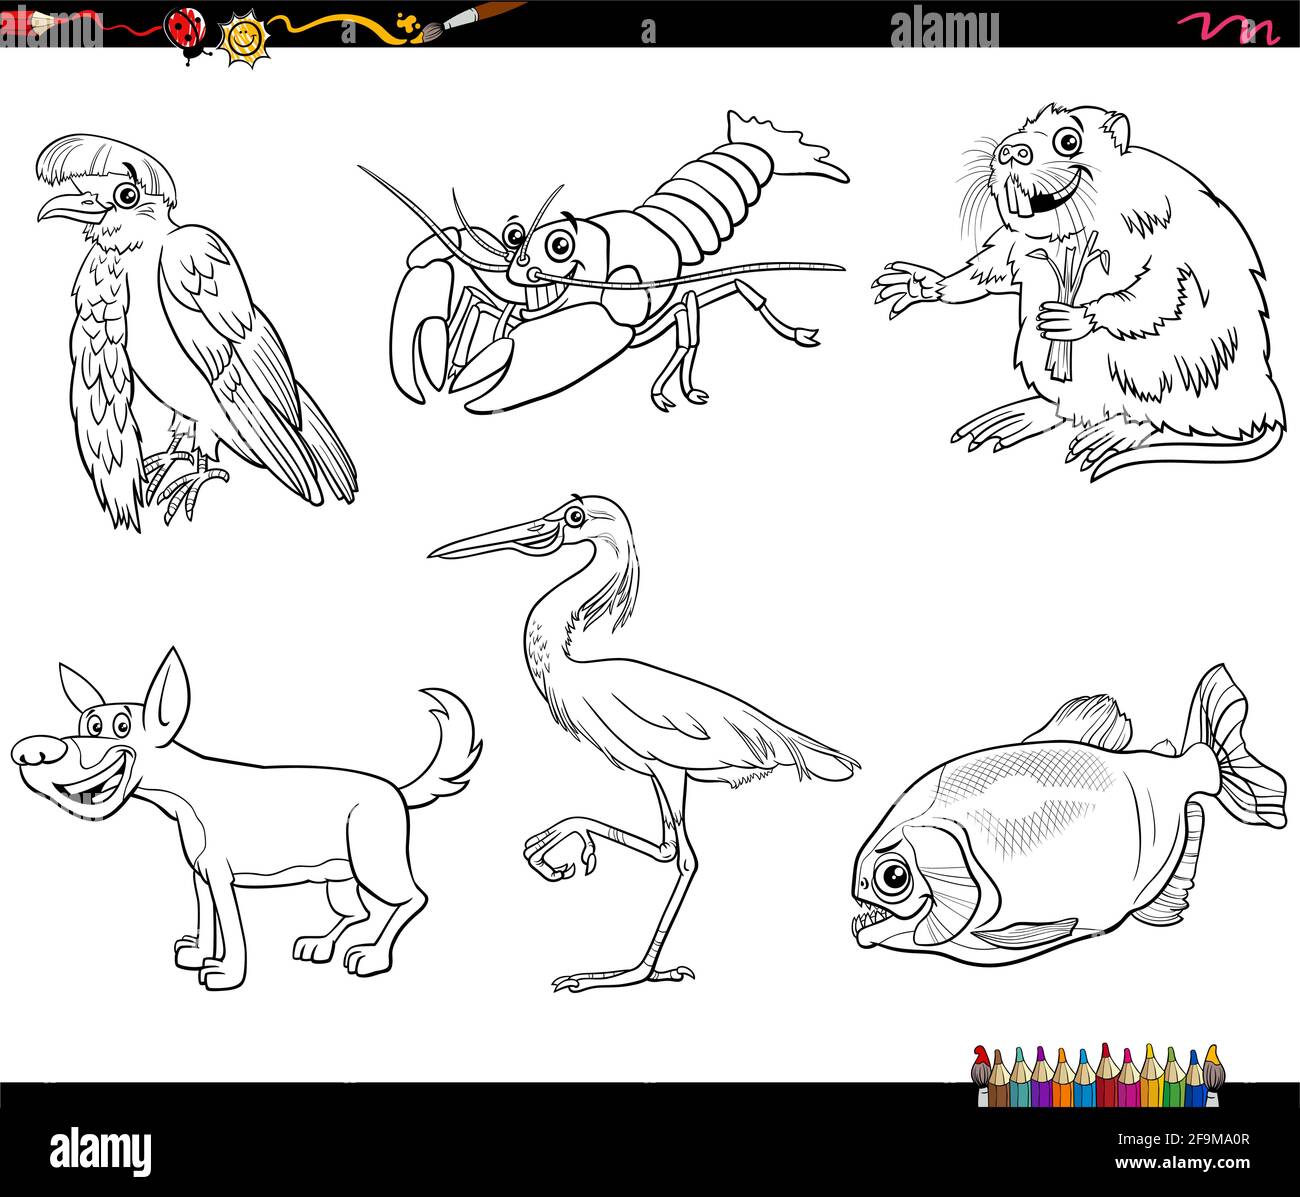 Cartoni animati in bianco e nero che raffigura personaggi fumetti di animali selvatici imposta pagina libro da colorare Illustrazione Vettoriale